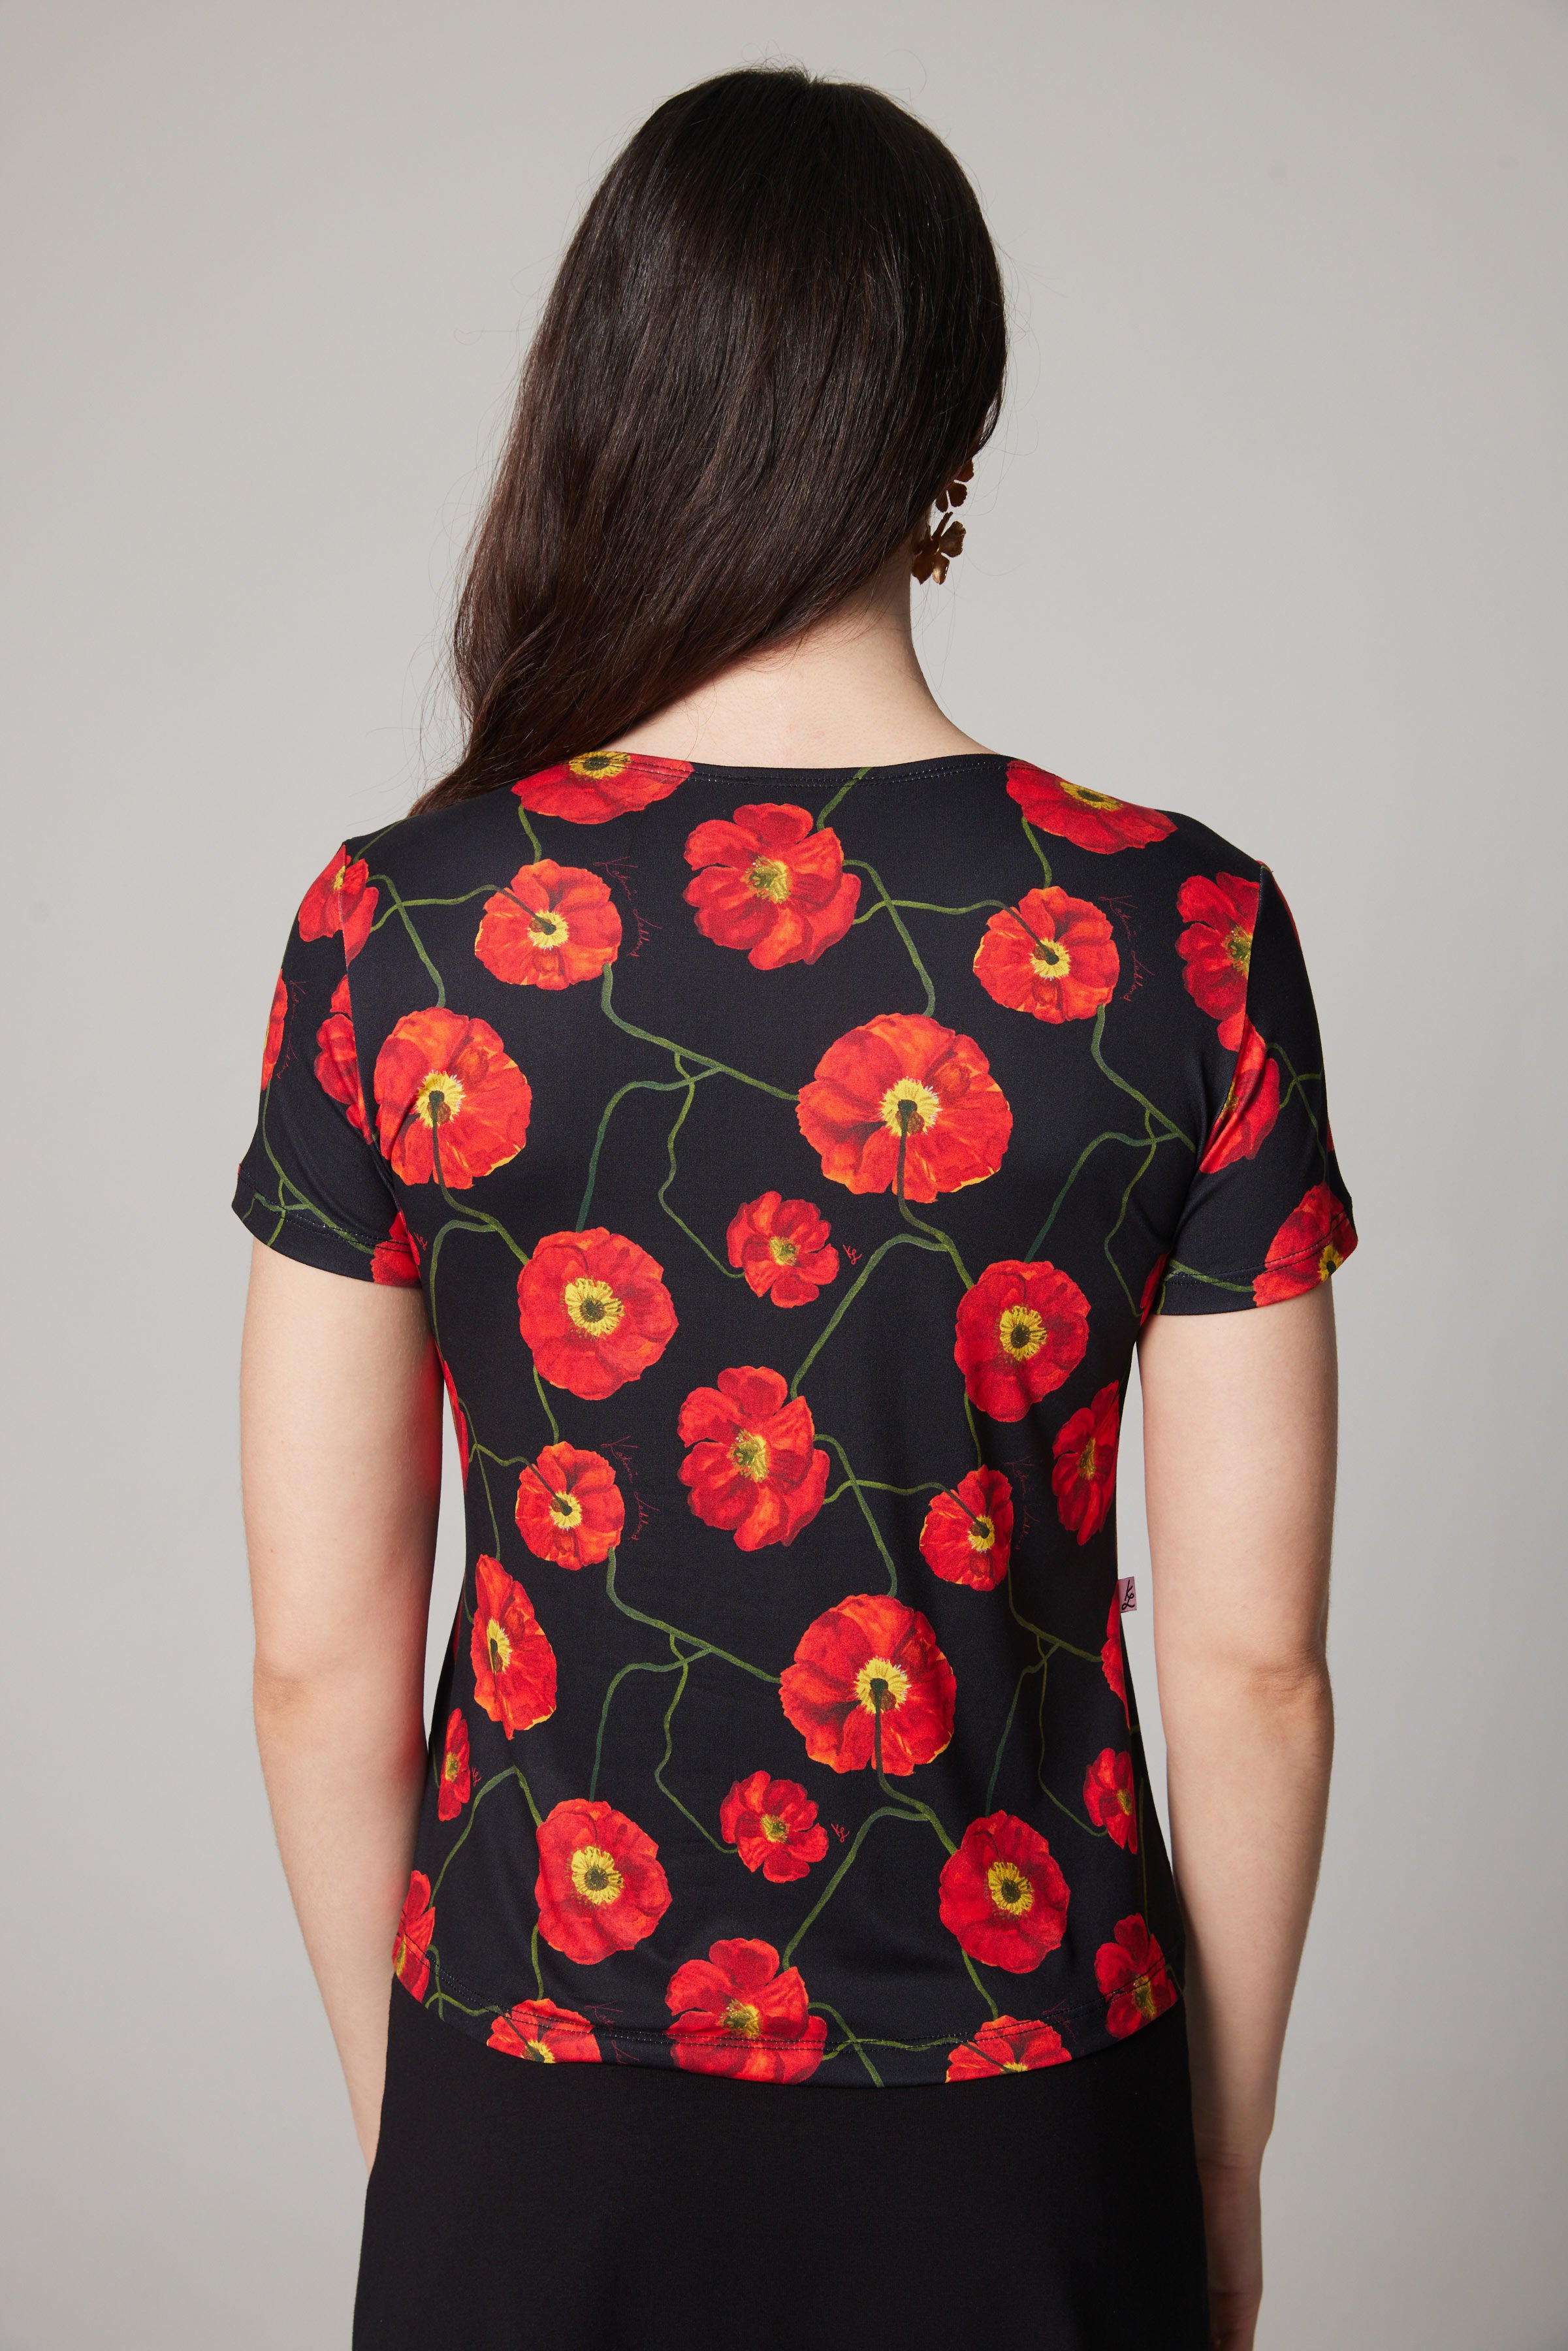 Scoop Neck T-shirt - Poppies